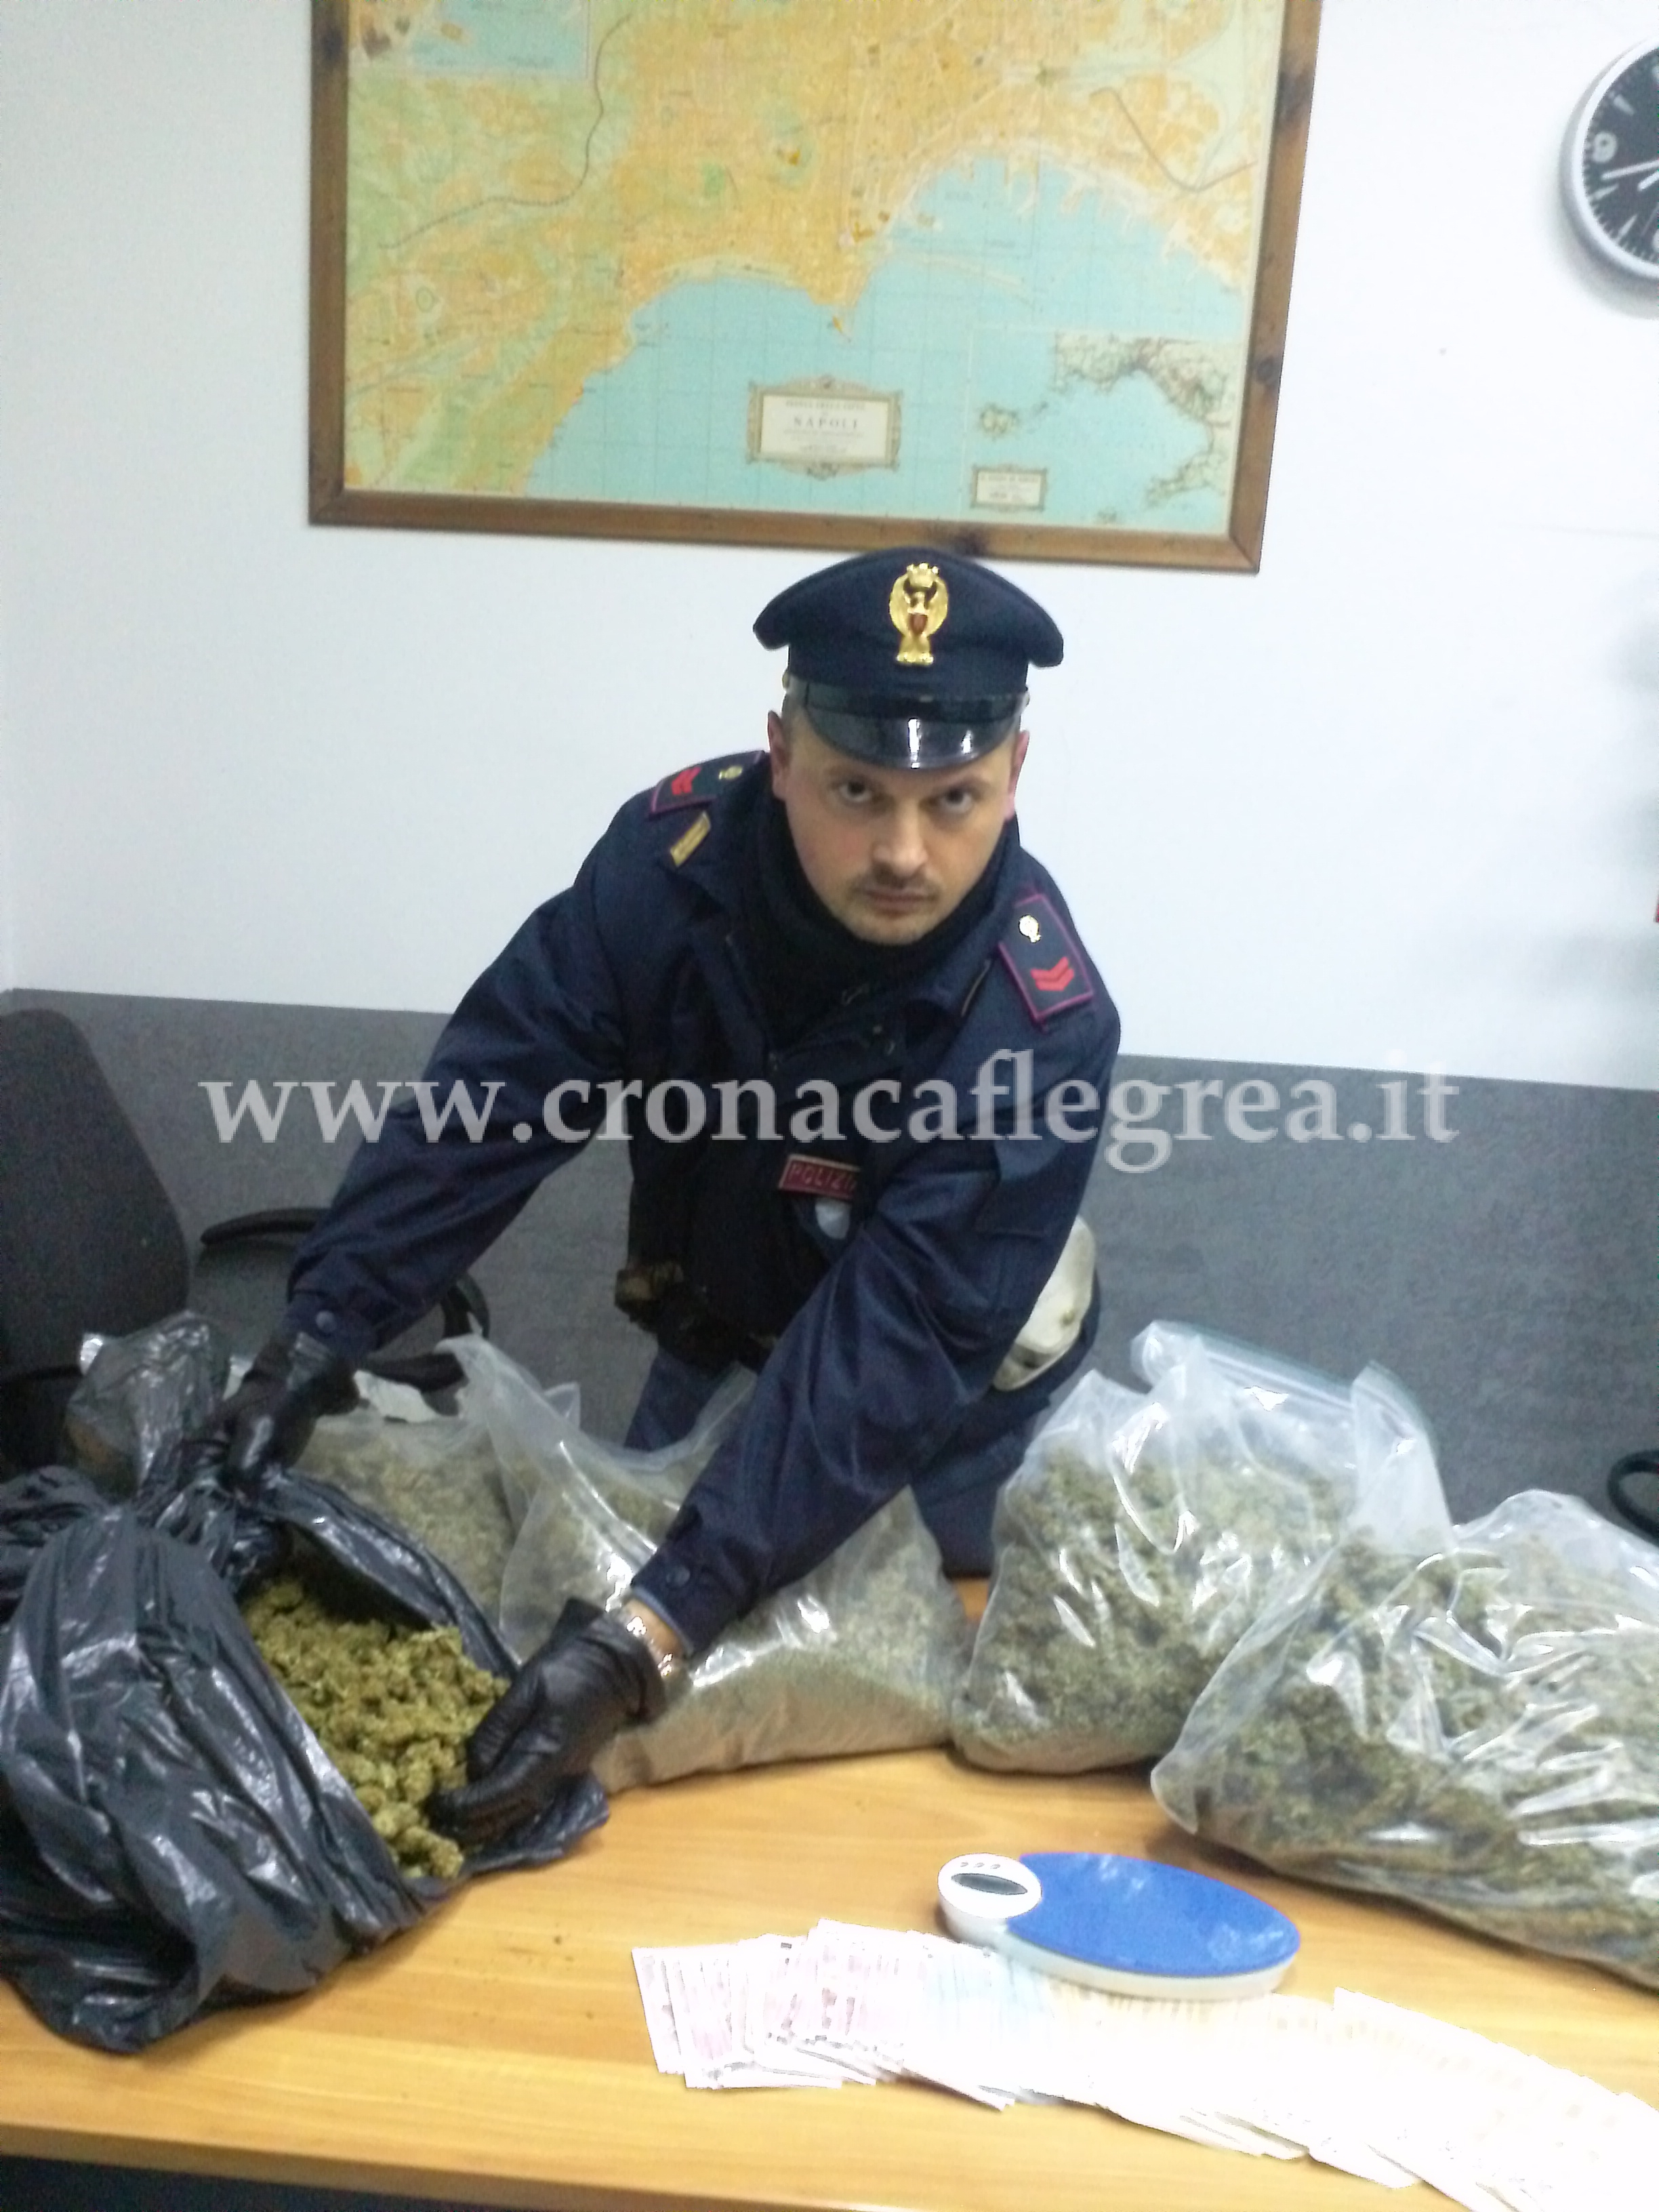 La Polizia arresta “corriere” di fumo della “Napoli bene”